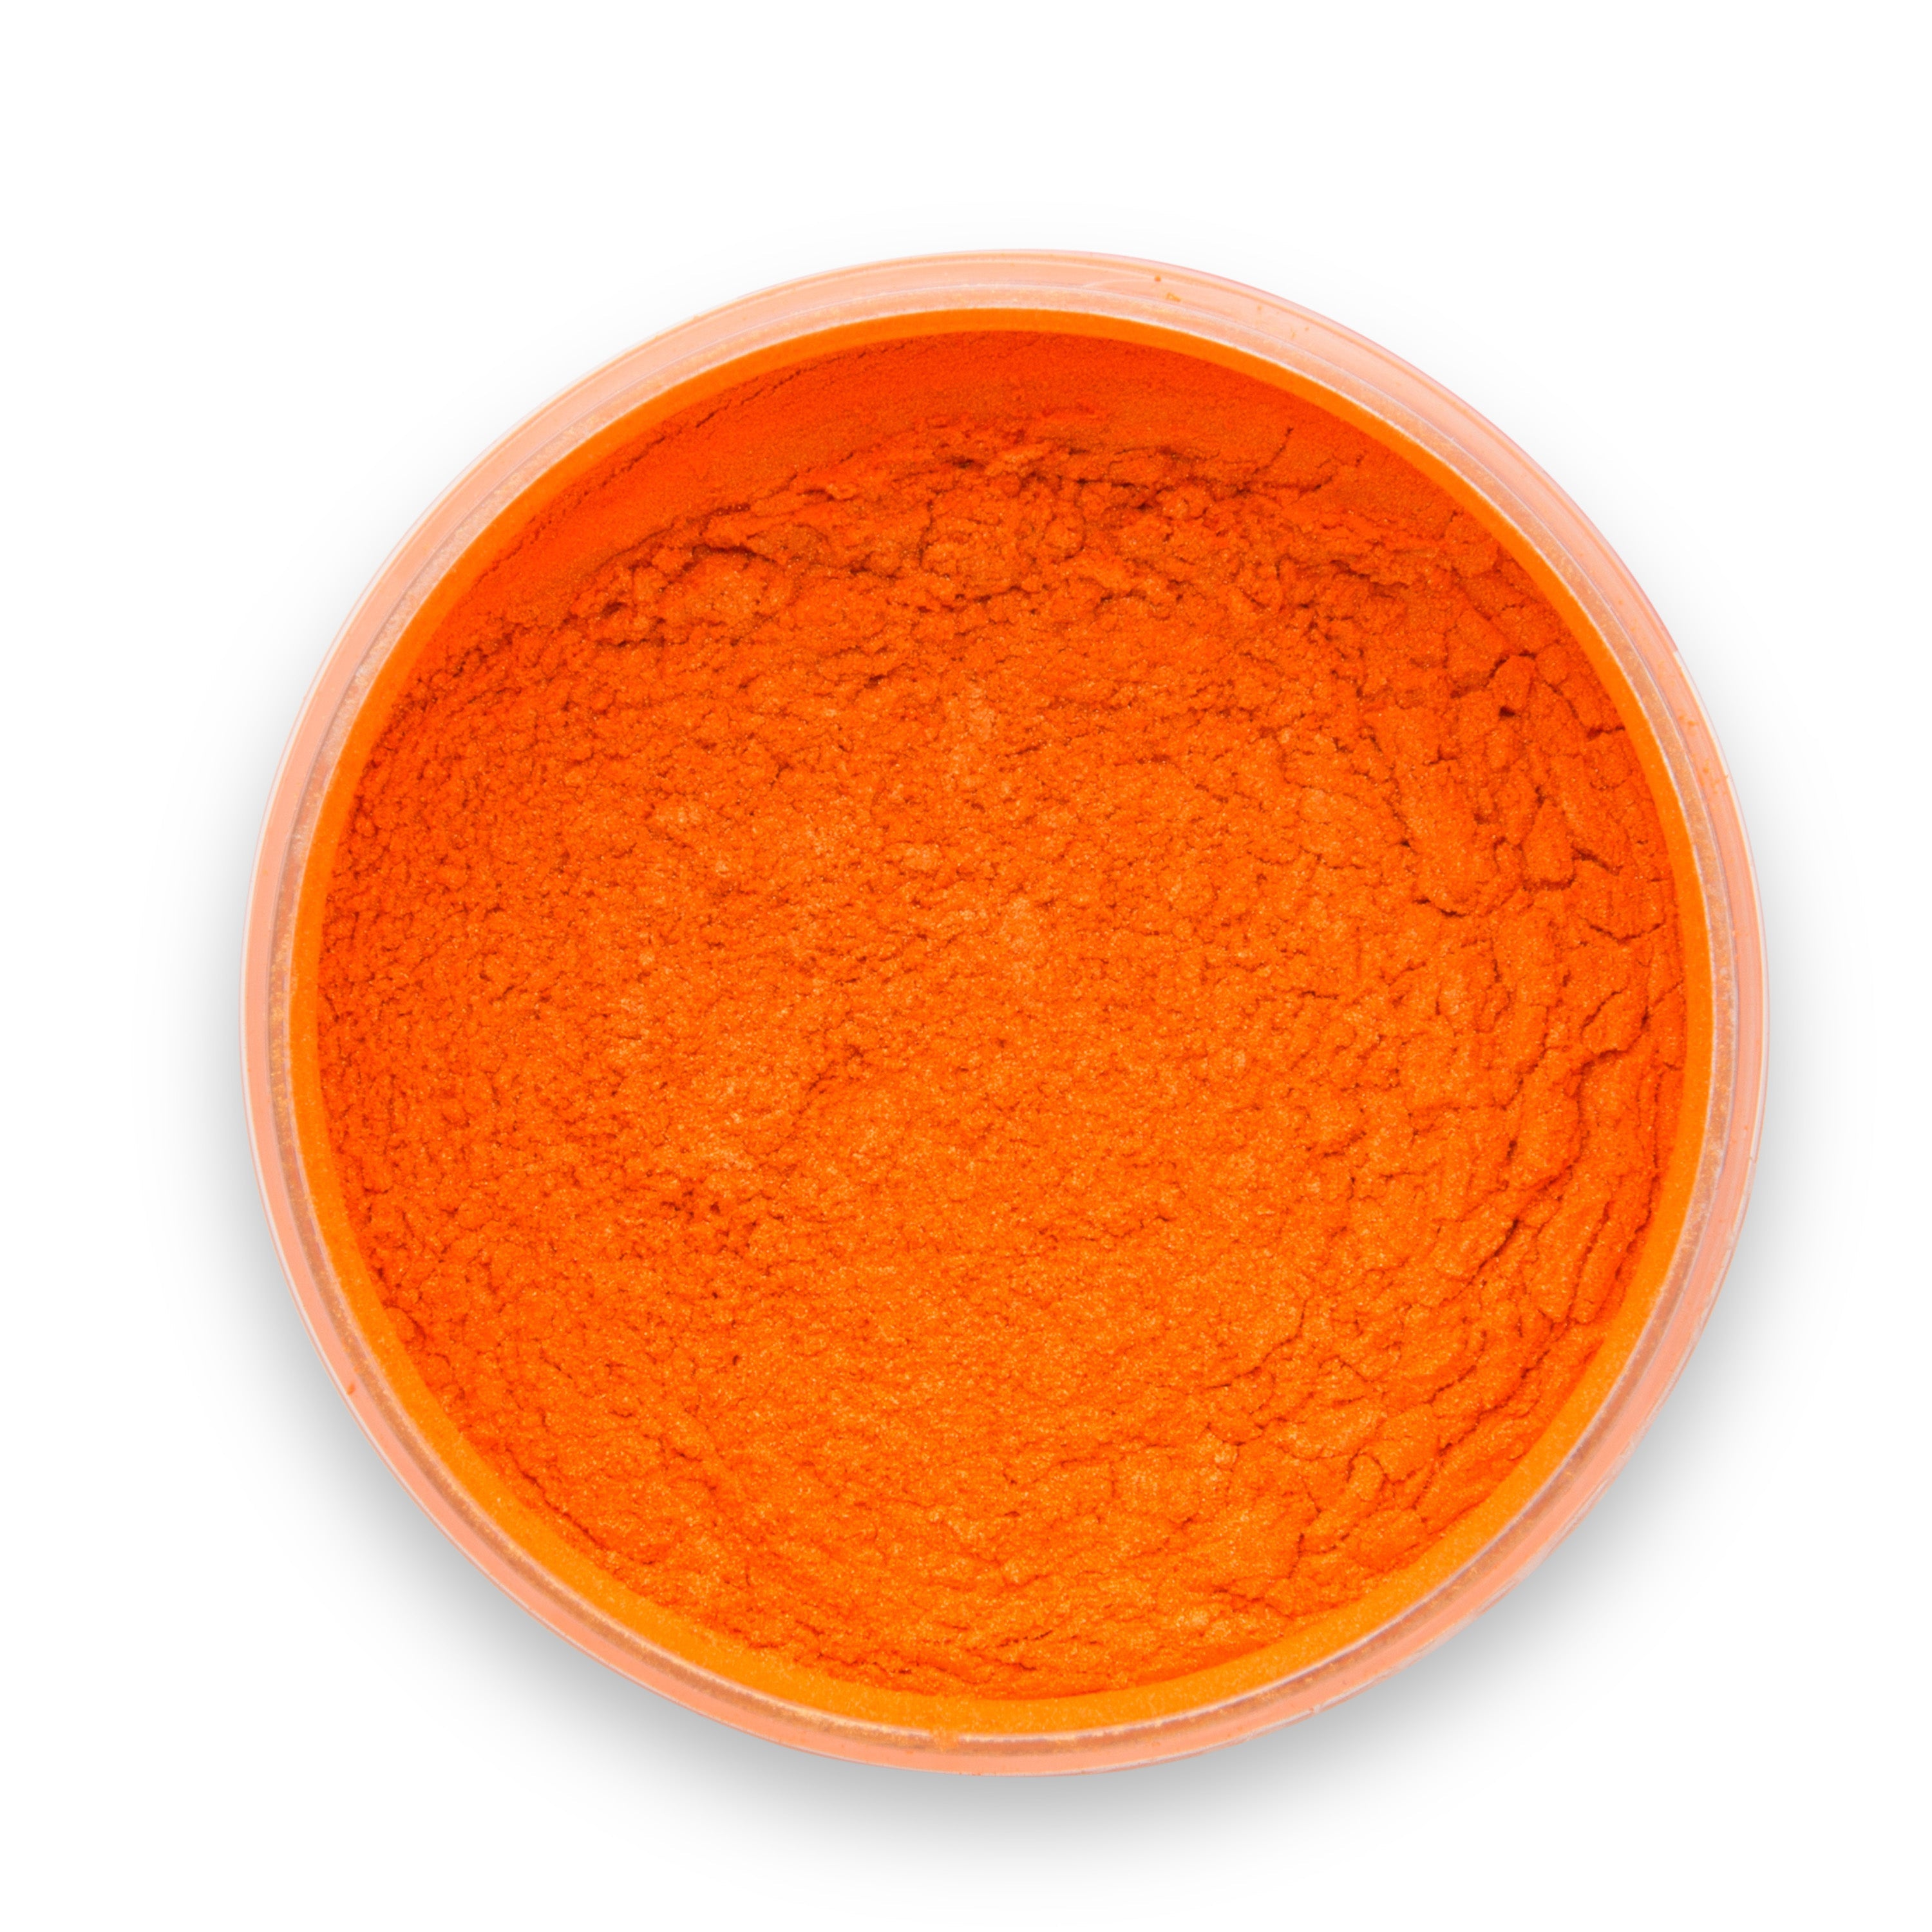 Lemonade Orange Epoxy Powder Pigment